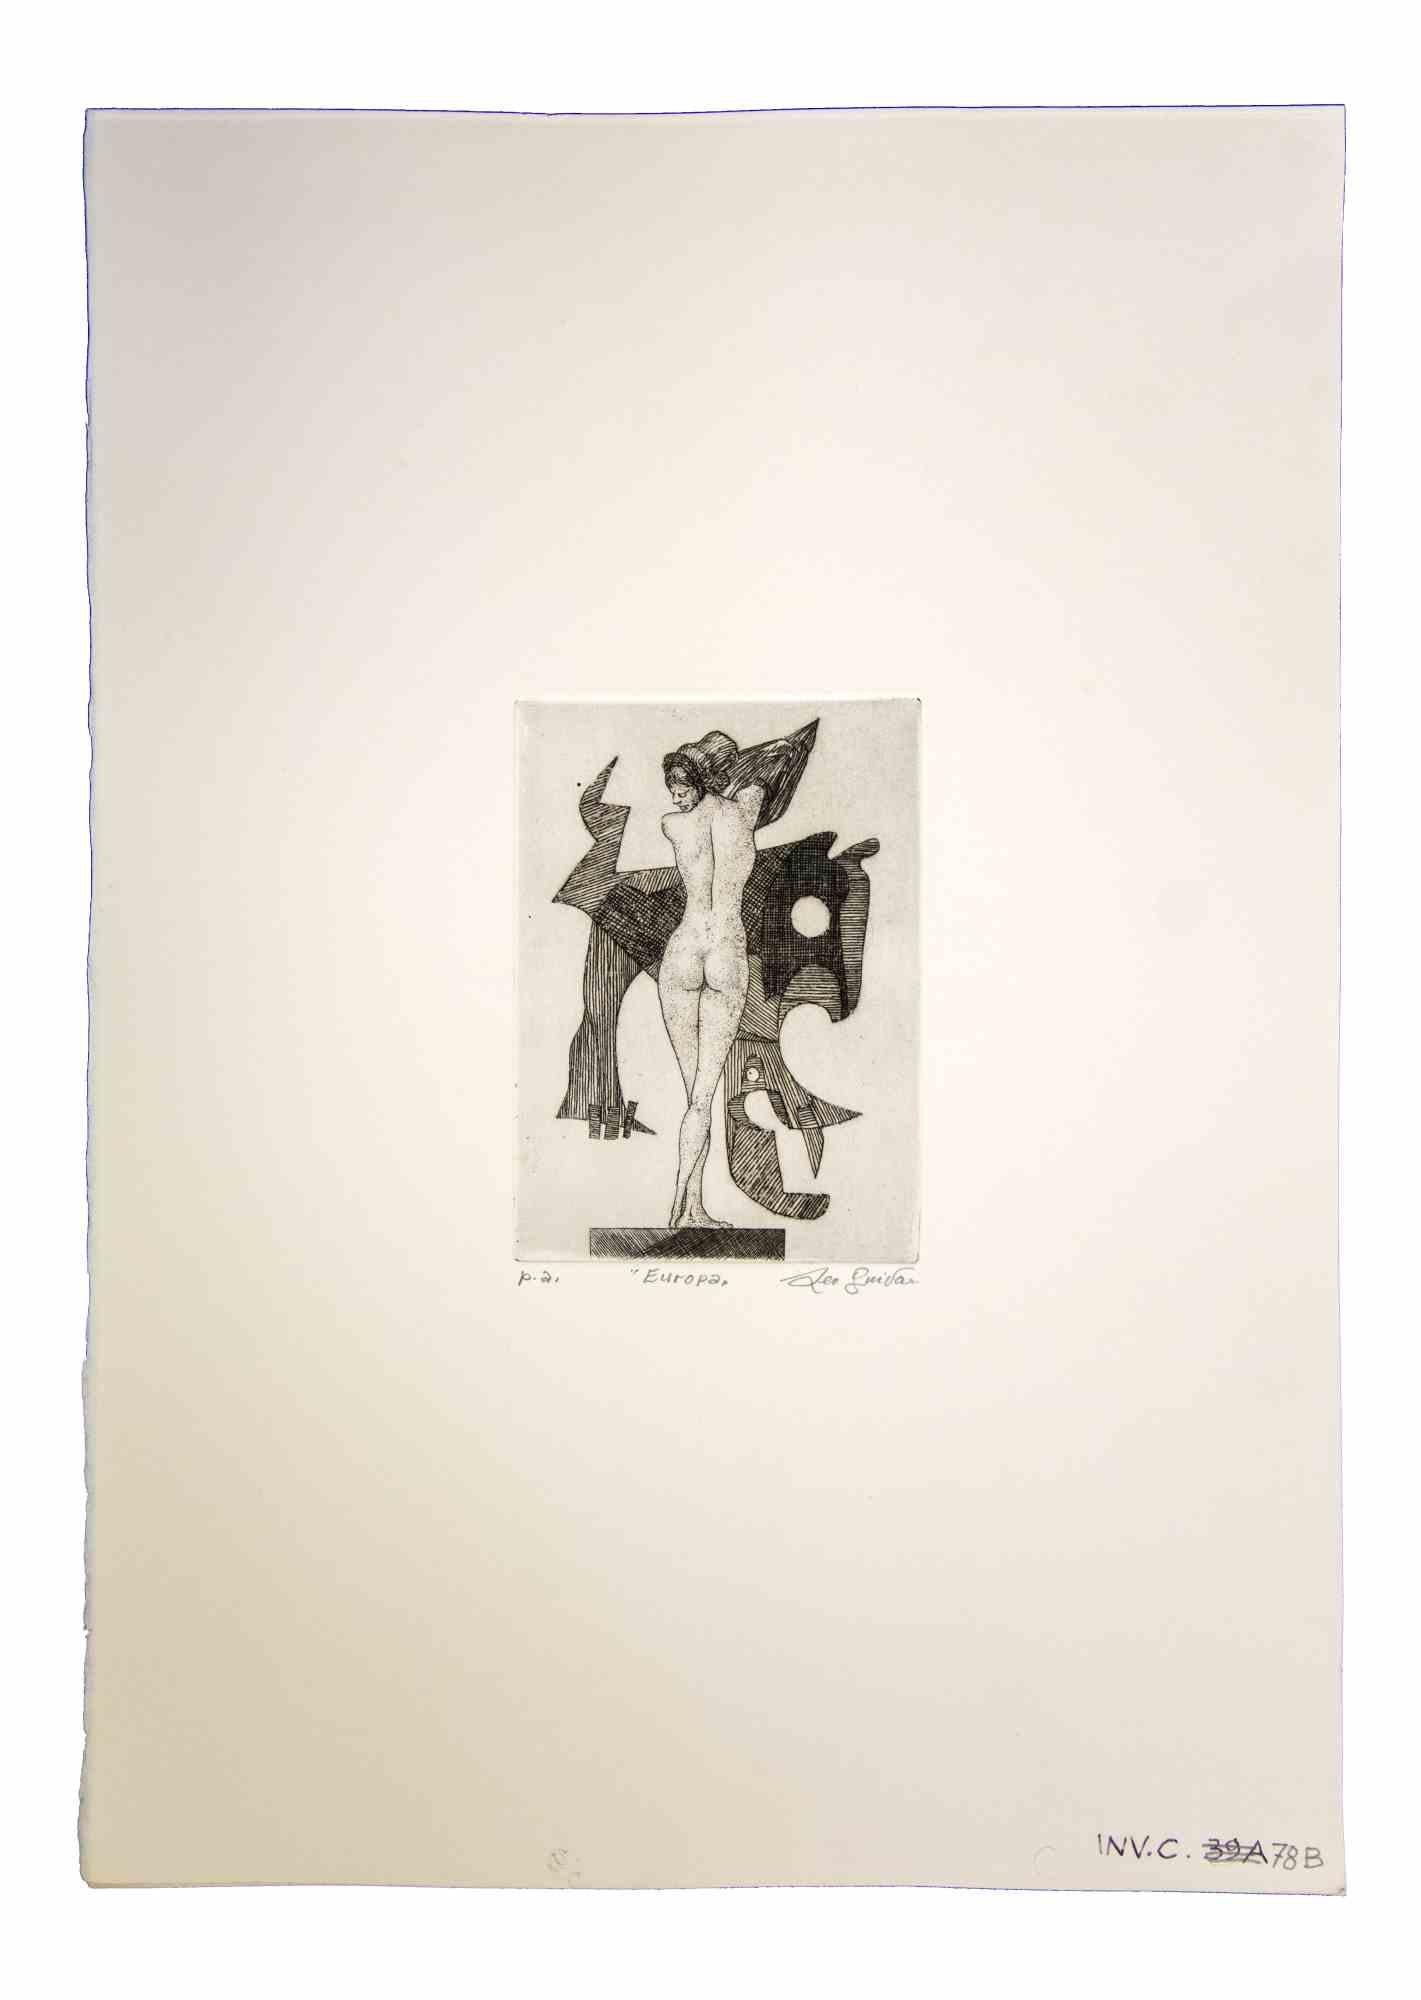 Europa est une œuvre d'art originale réalisée dans les années 1970 par l'artiste contemporain italien  Leo Guida  (1992 - 2017).

Gravure originale sur papier.

Signé à la main en bas à droite au crayon.

Épreuve d'artiste en bas à gauche "p.a."